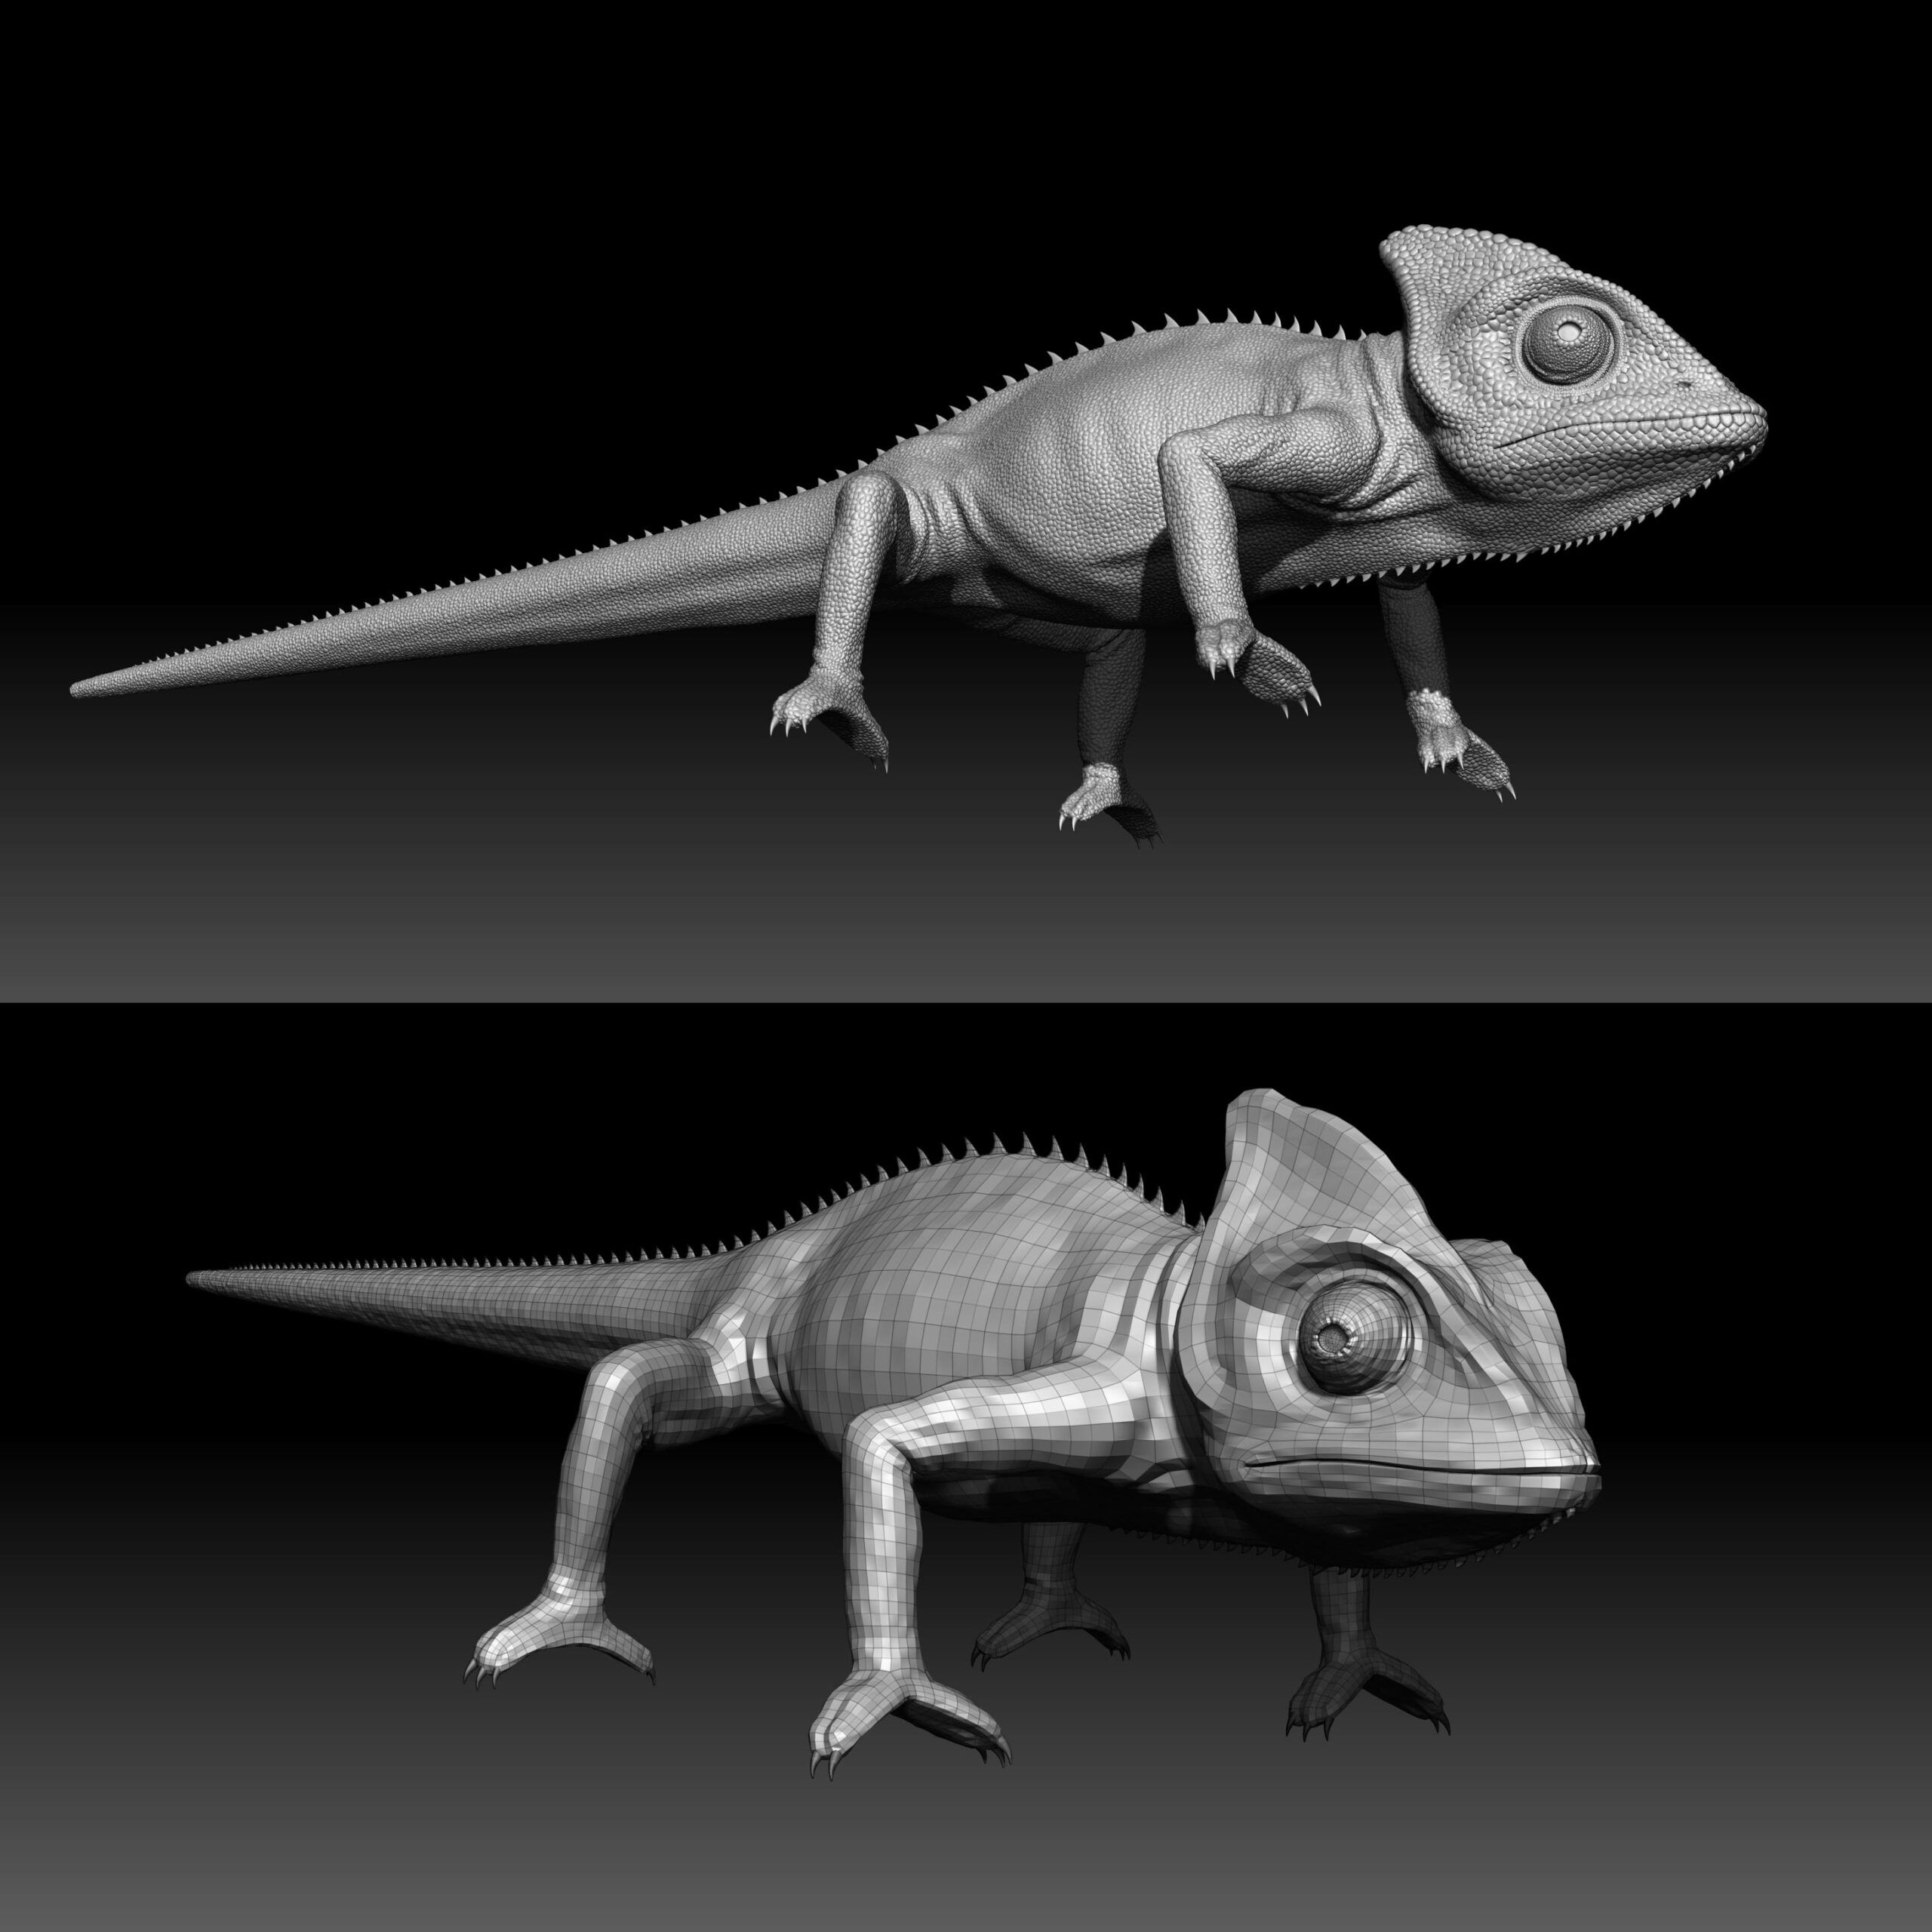 cg_chameleon_animals_zbrush-sculpting-scaled Fotorealistisches Chamäleon 3D-Model mit Animation und Kameraverfolgung